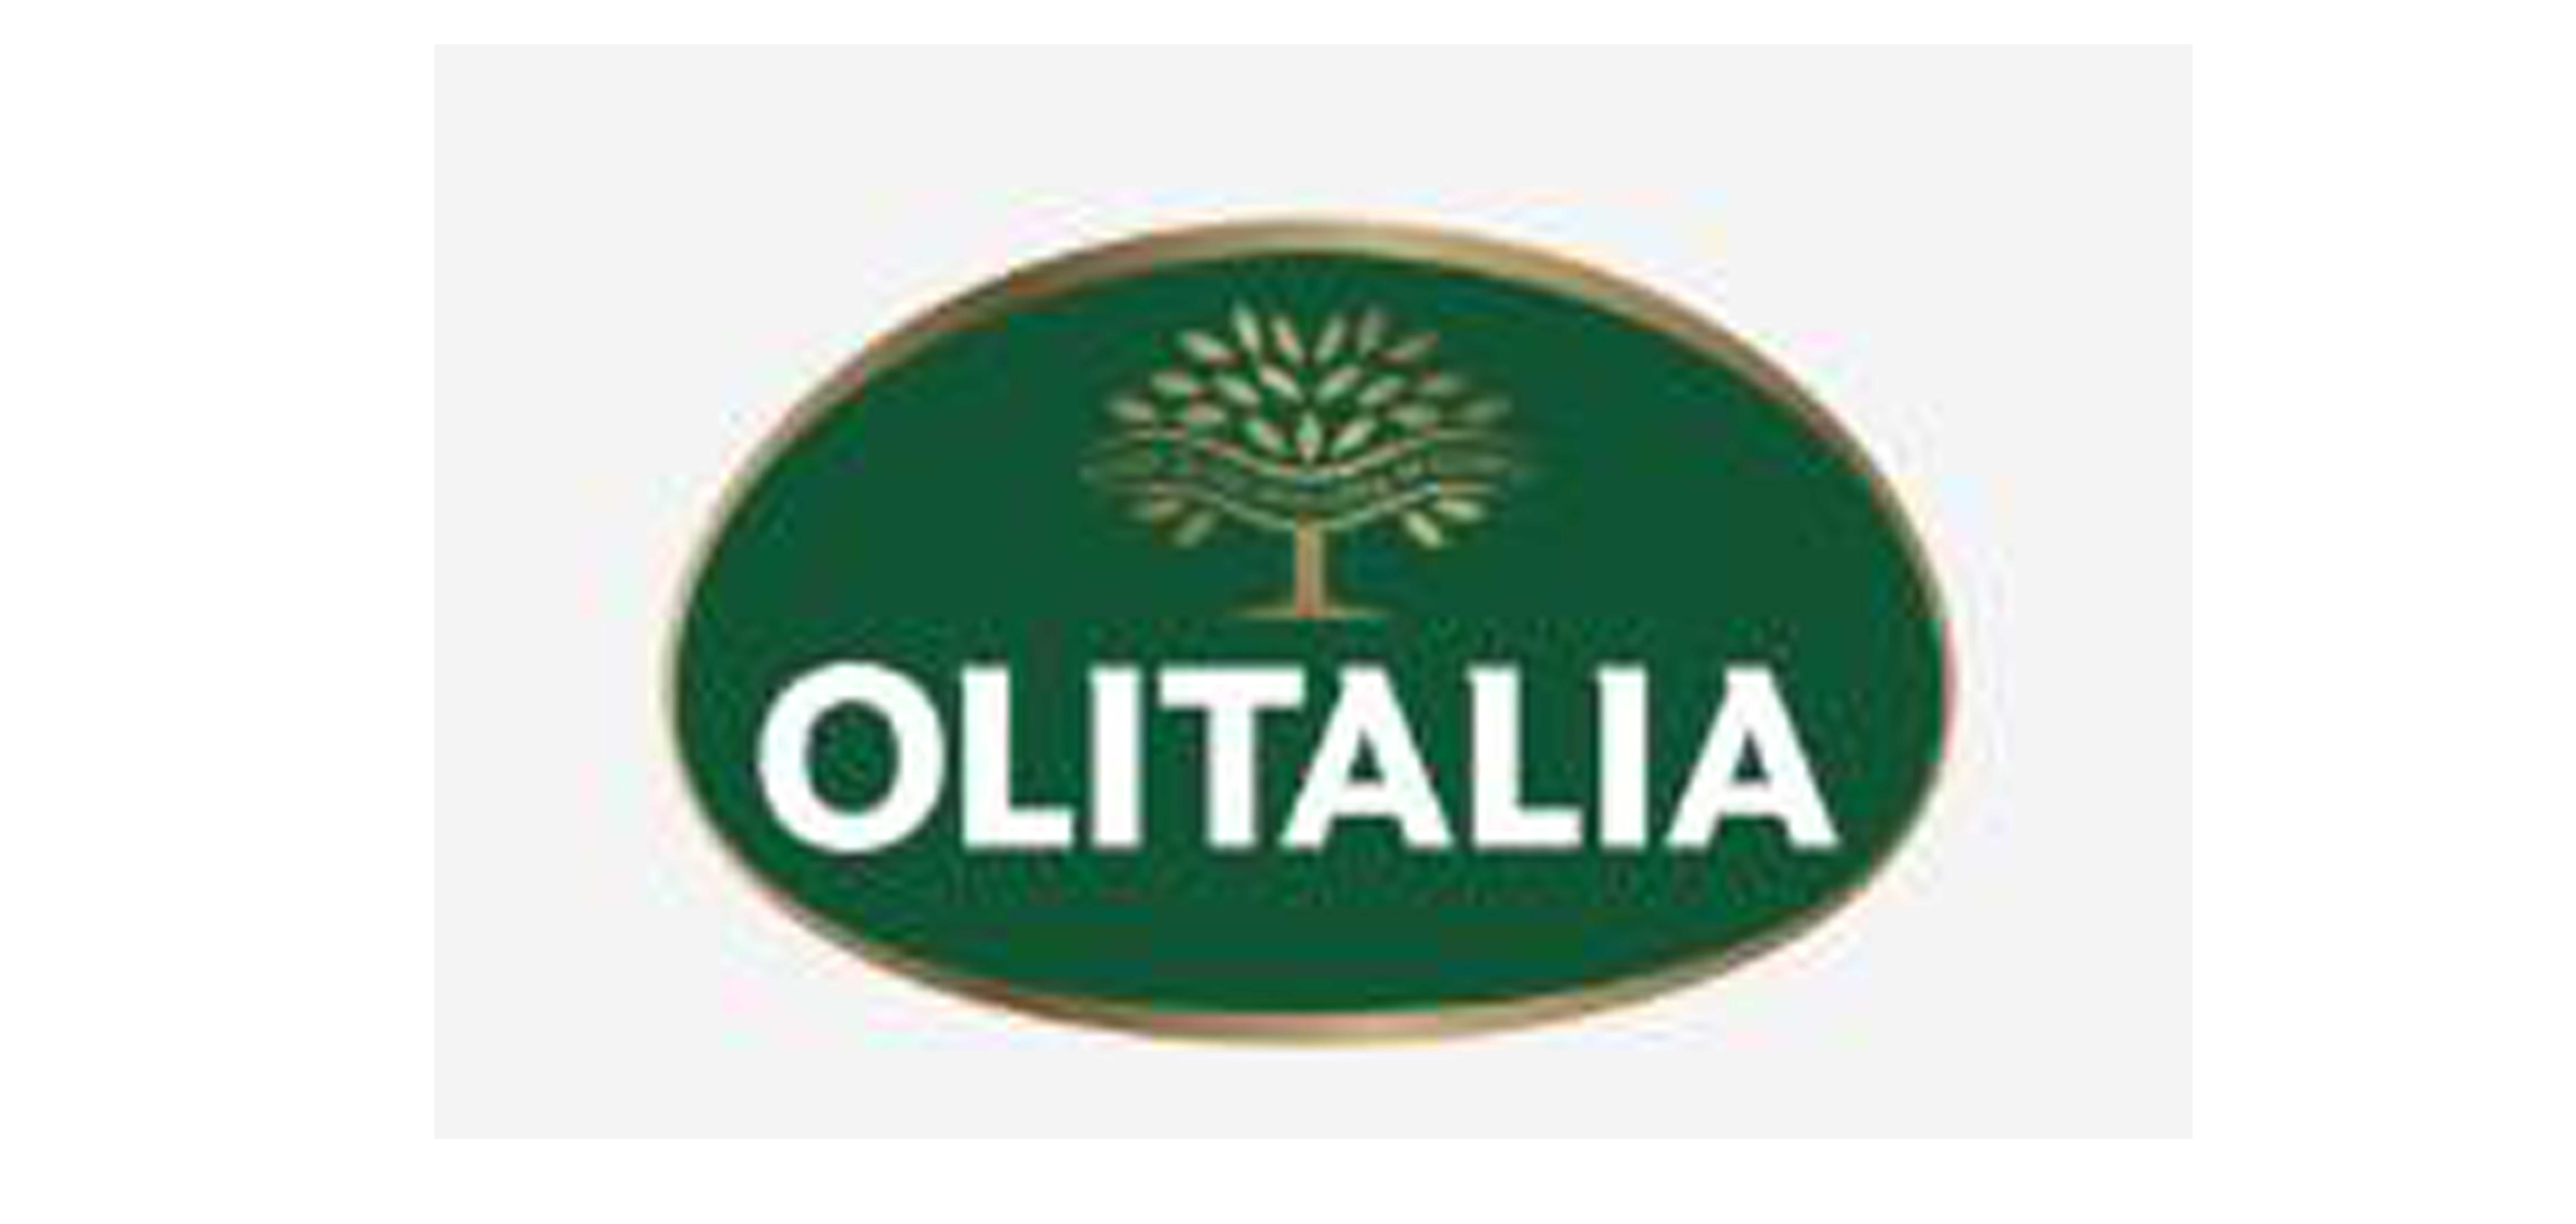 Olitalia是什么牌子_Olitalia品牌怎么样?